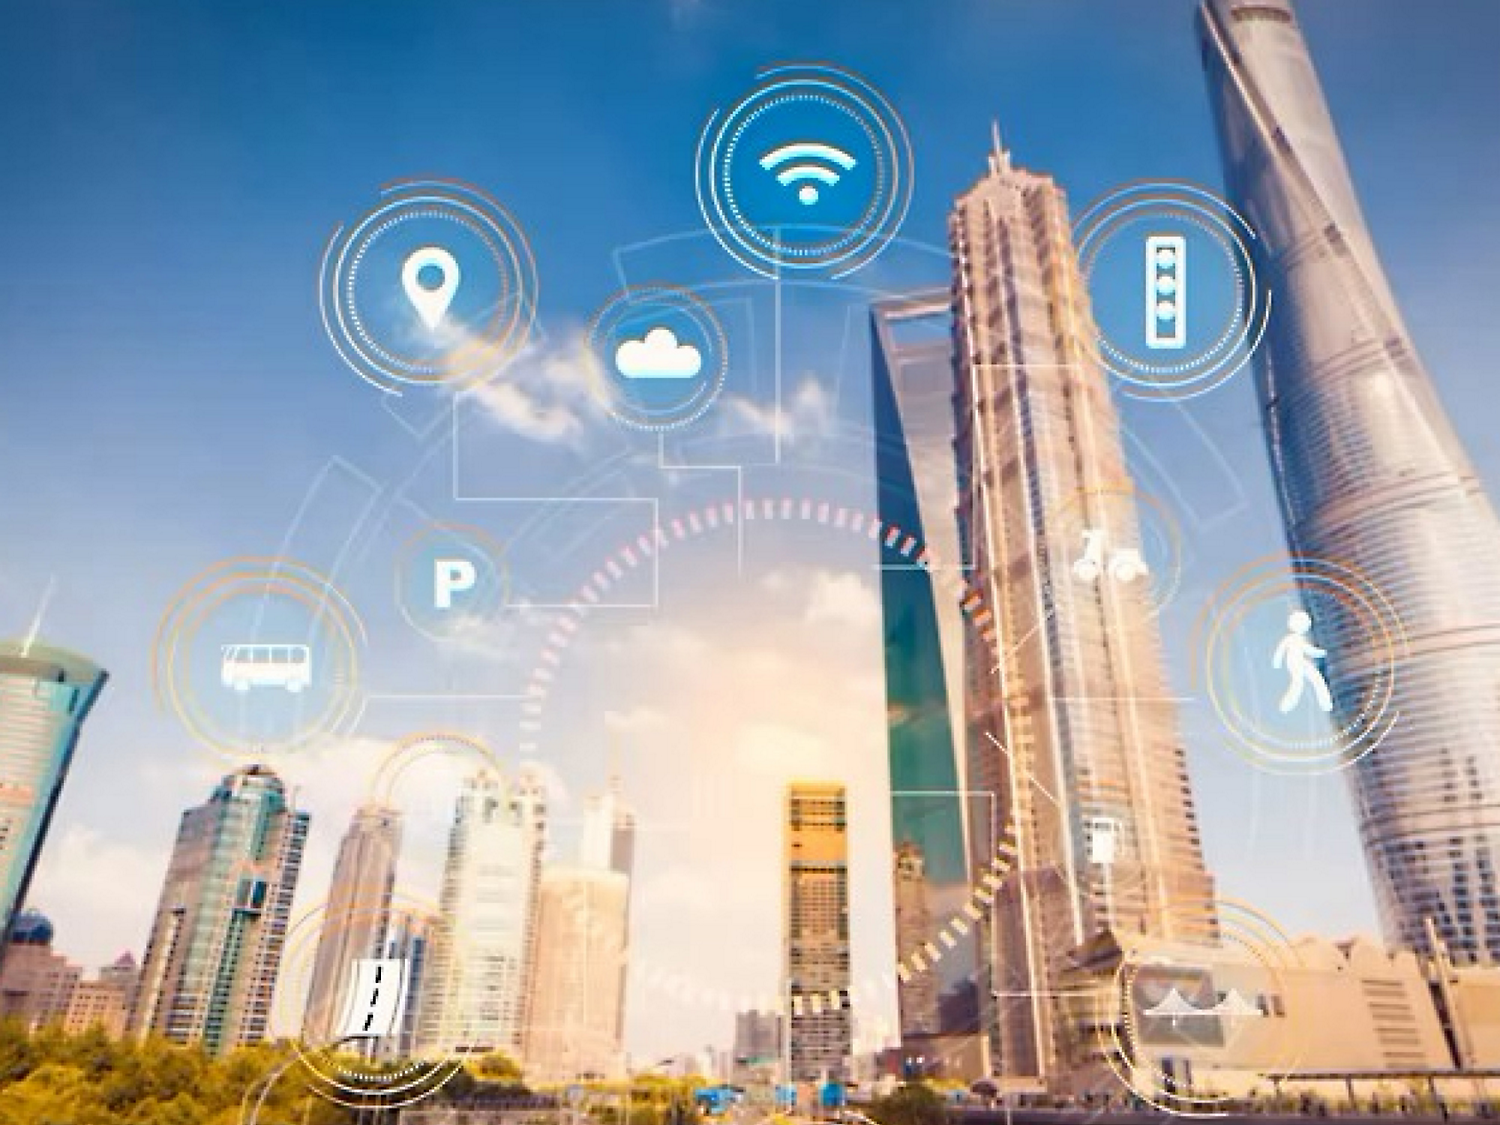 Obrázek chytrého města s digitálními ikonami představujícími wi-fi, cloud computing a další technologie s mrakodrapy.